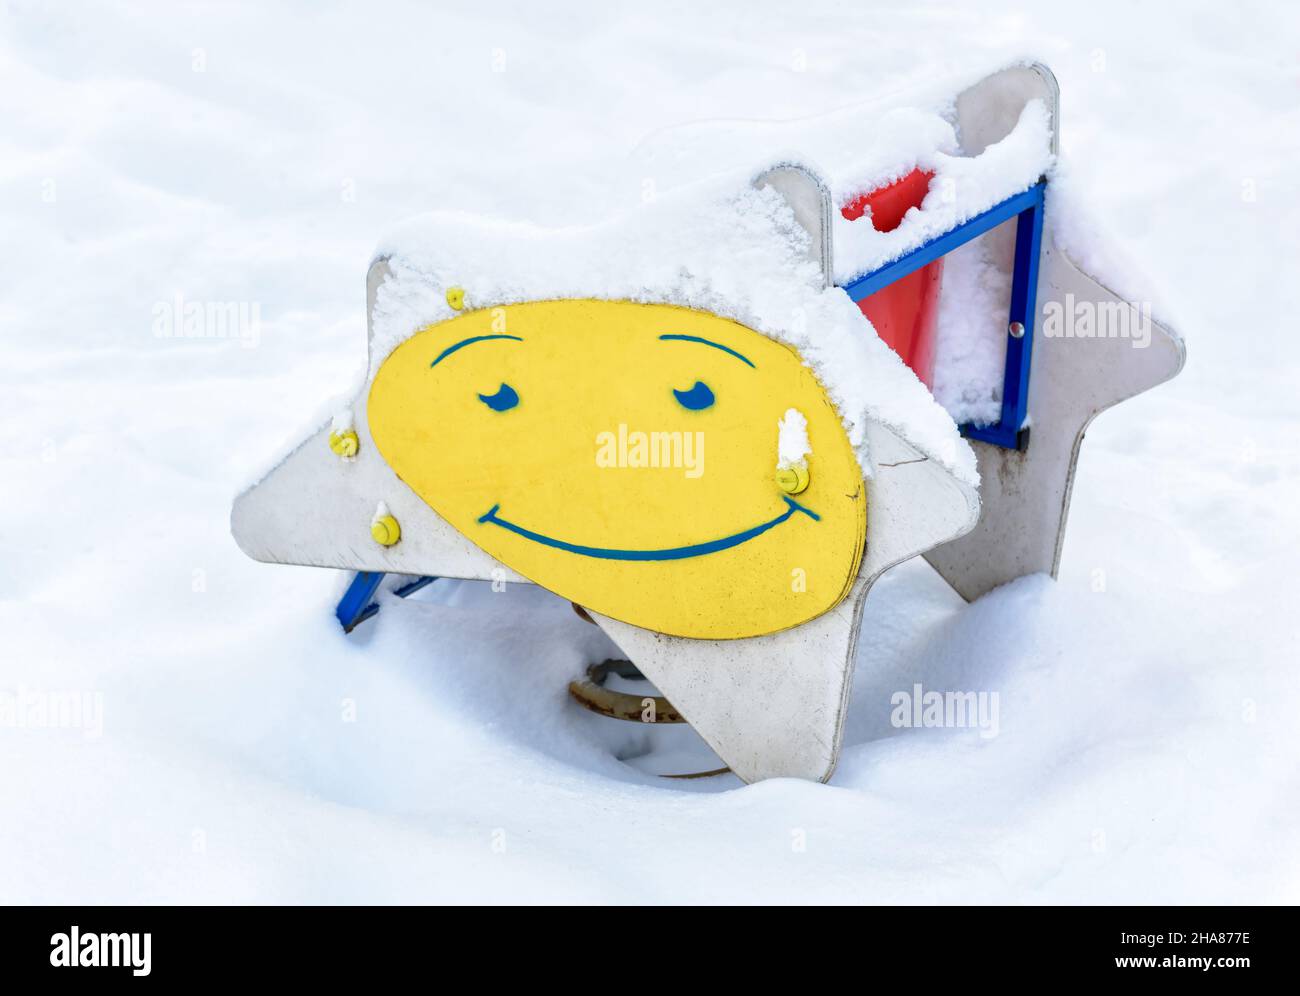 Verschneite Spielplatz im Winter, Moskau, Russland. Lächeln Bild auf Kinder`s Schaukel, leeren Park nach Schneefall. Landschaft des Kindergartens unter Schnee im Winter c Stockfoto